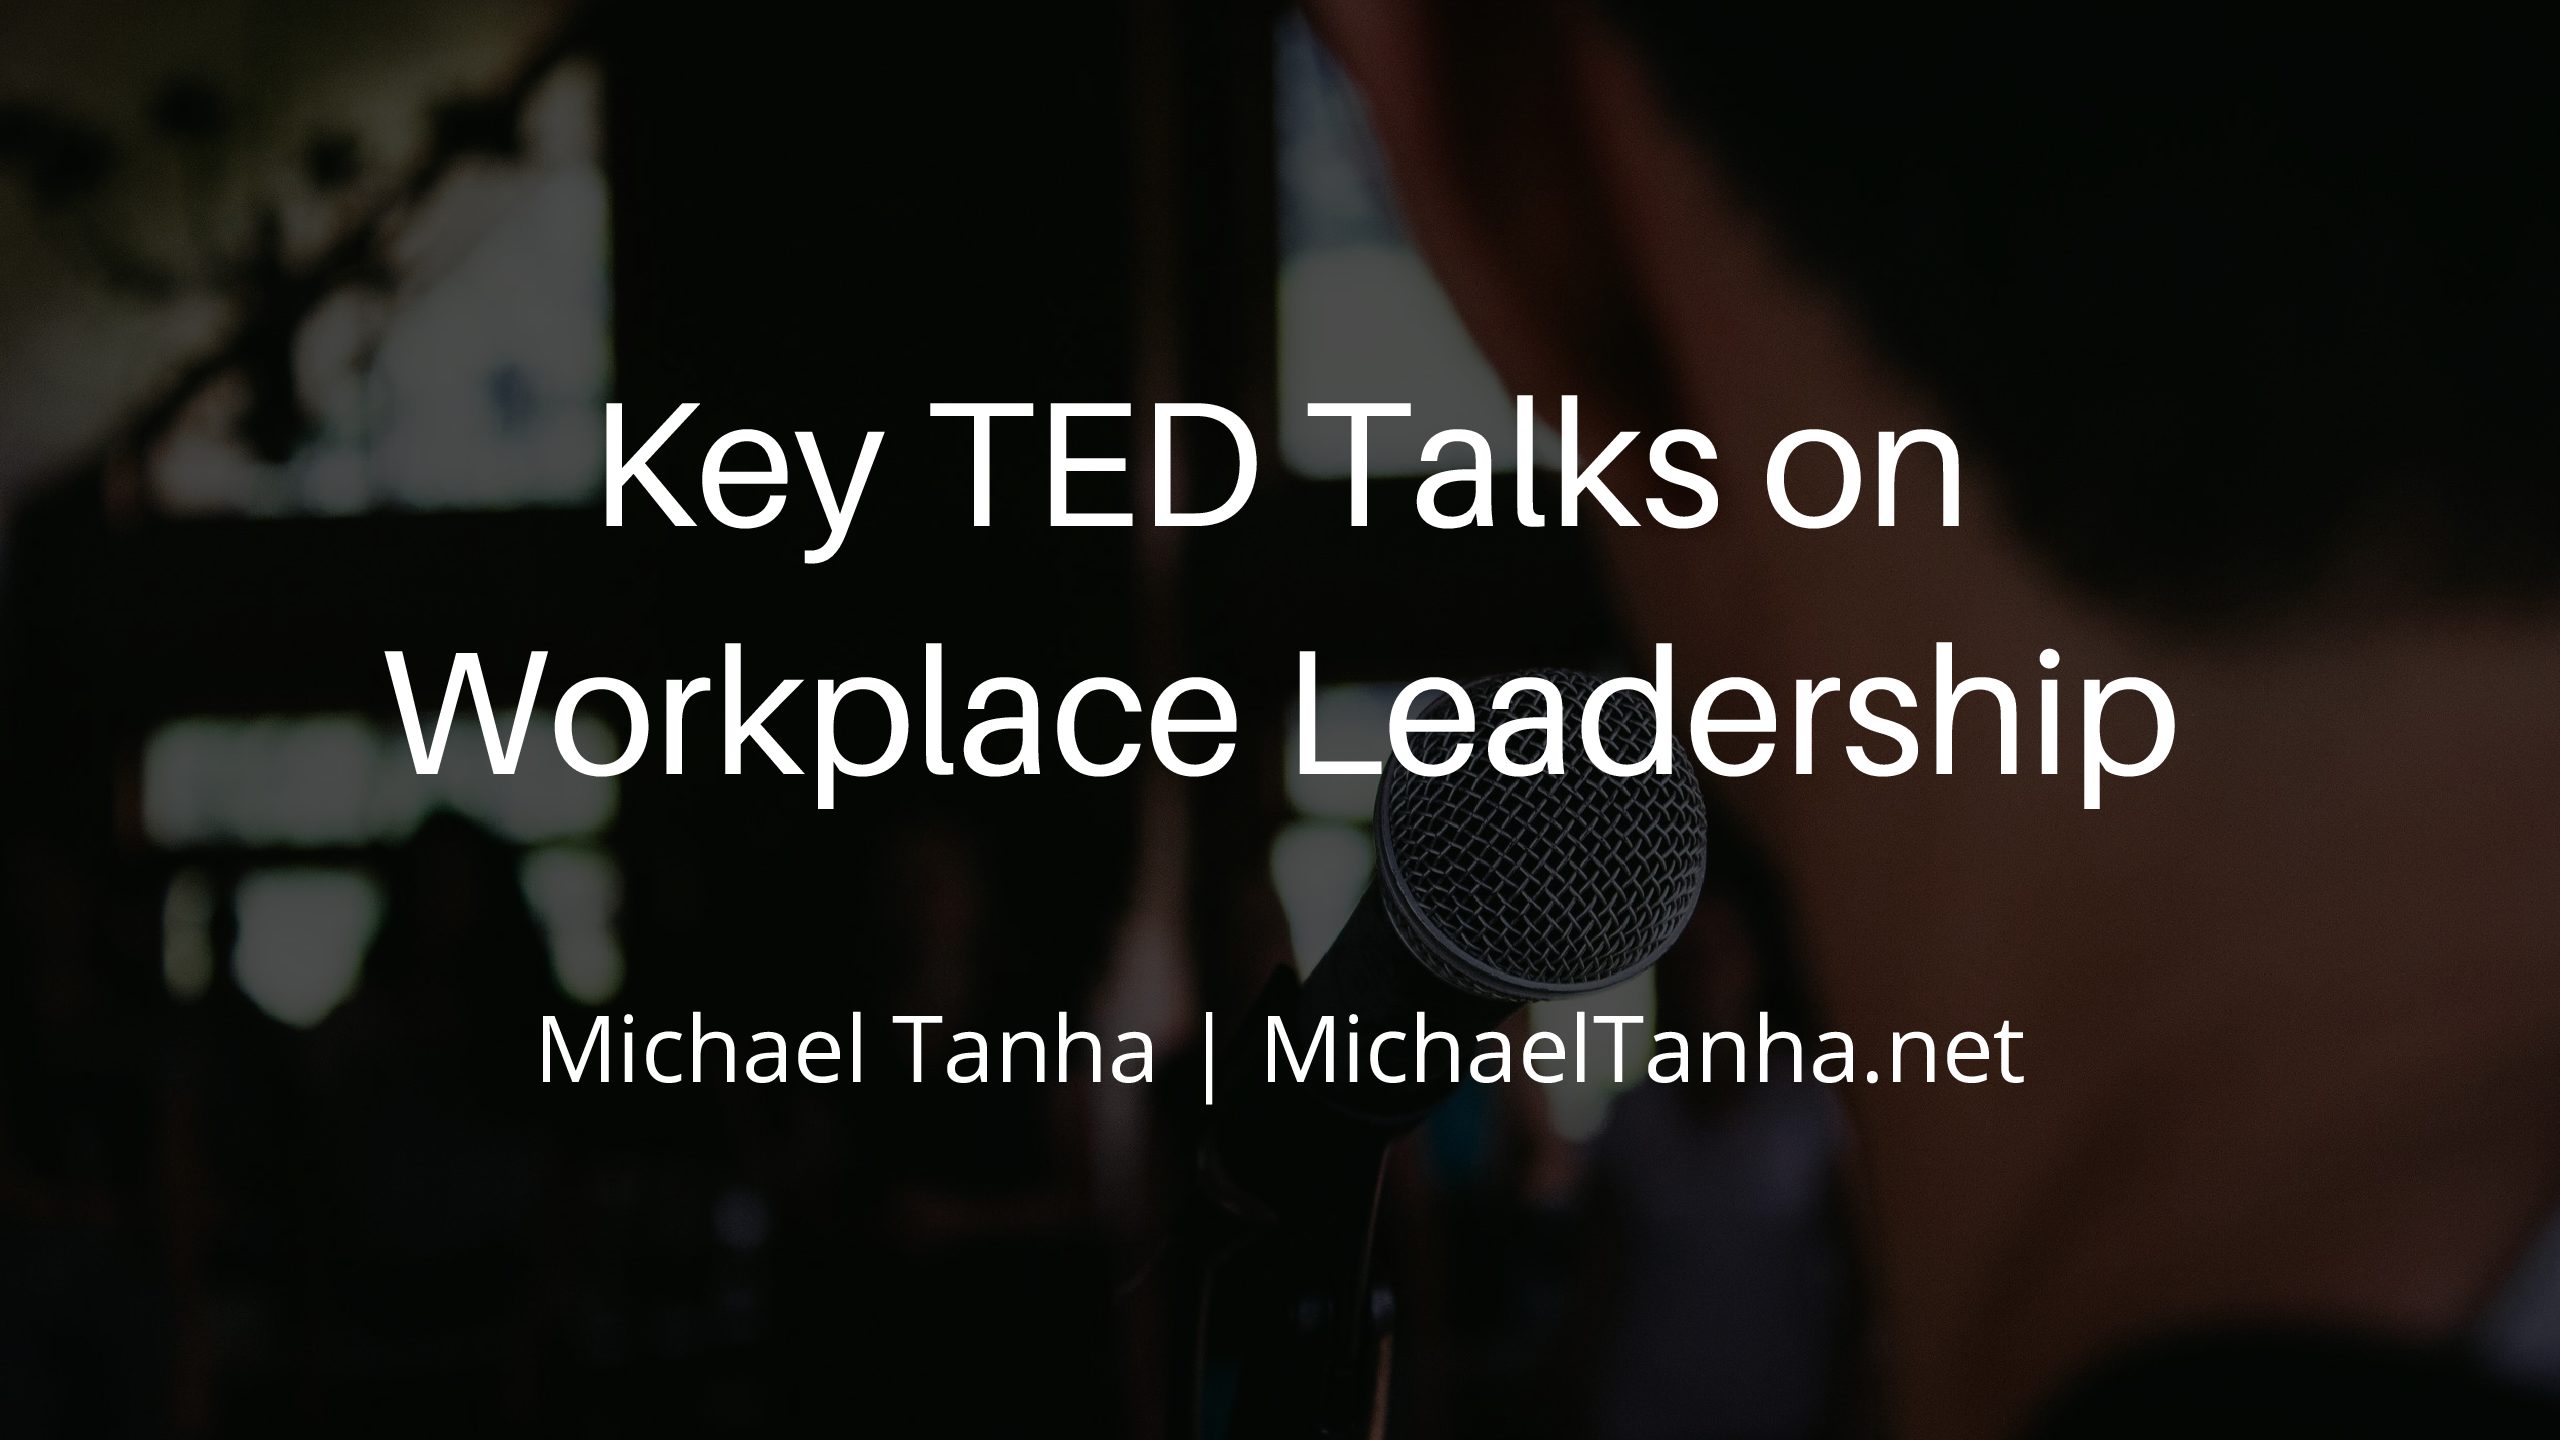 Key TED Talks on Workplace Leadership